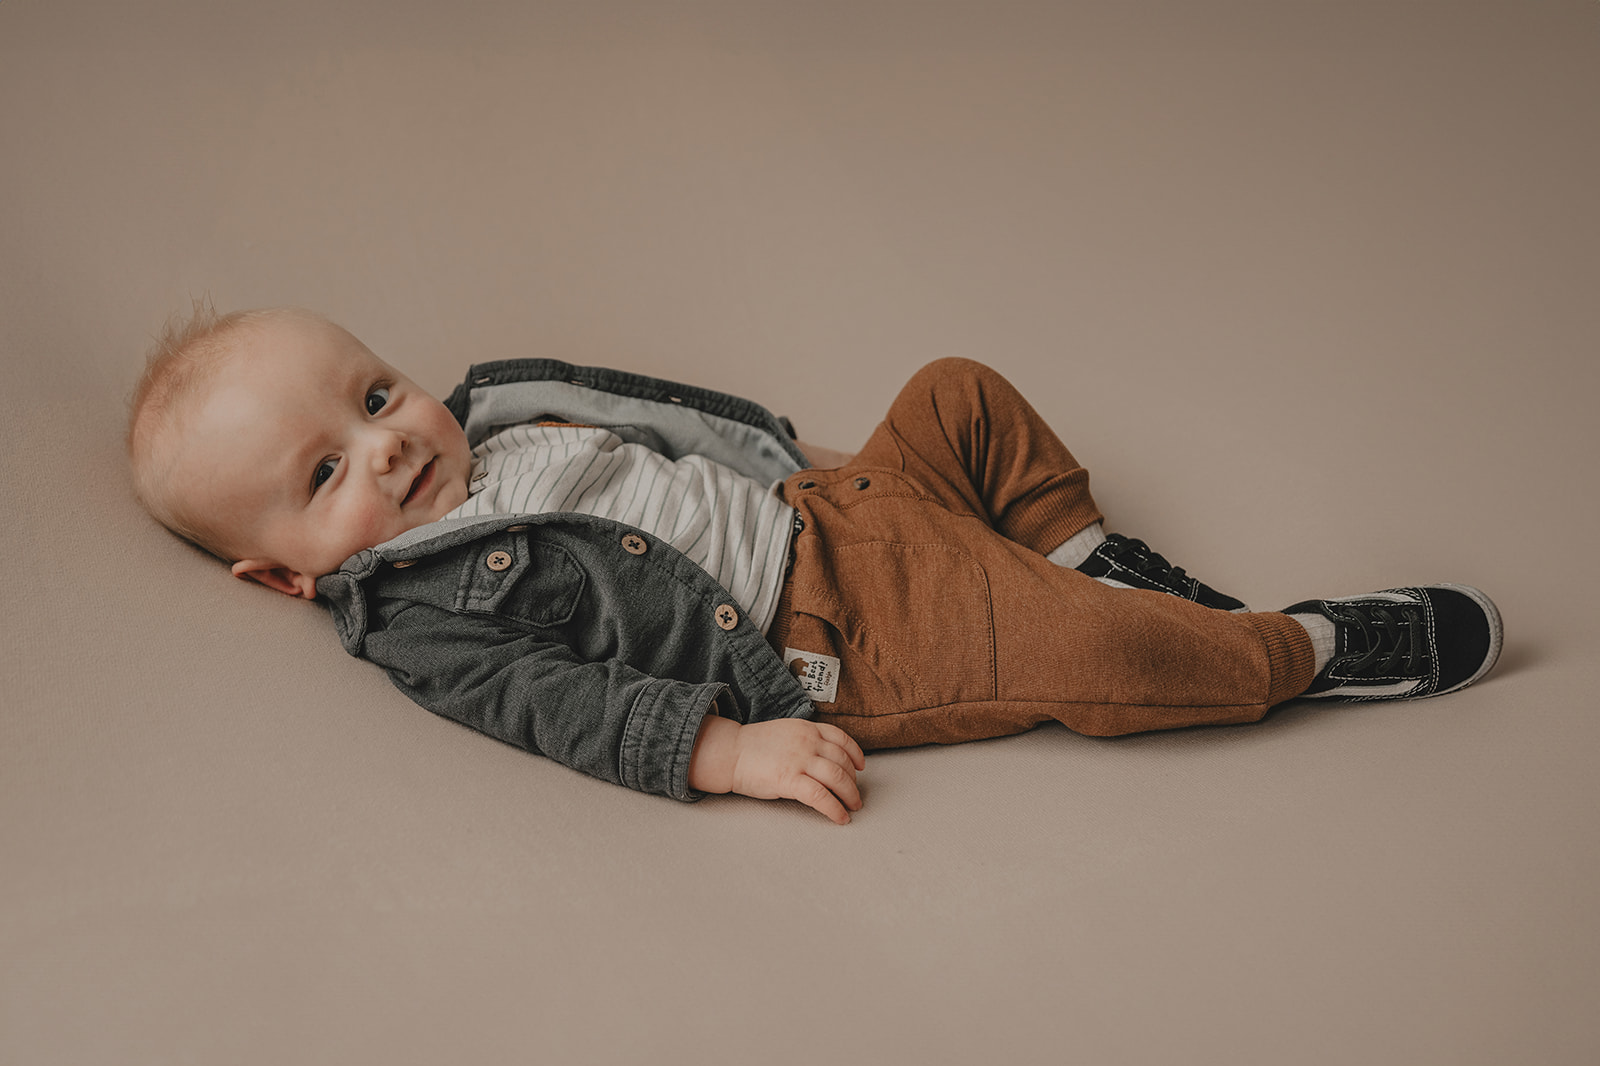 babyfotoshoot gelderland studio heerde zwolle apeldoorn warm boho spontaan baby fotografie